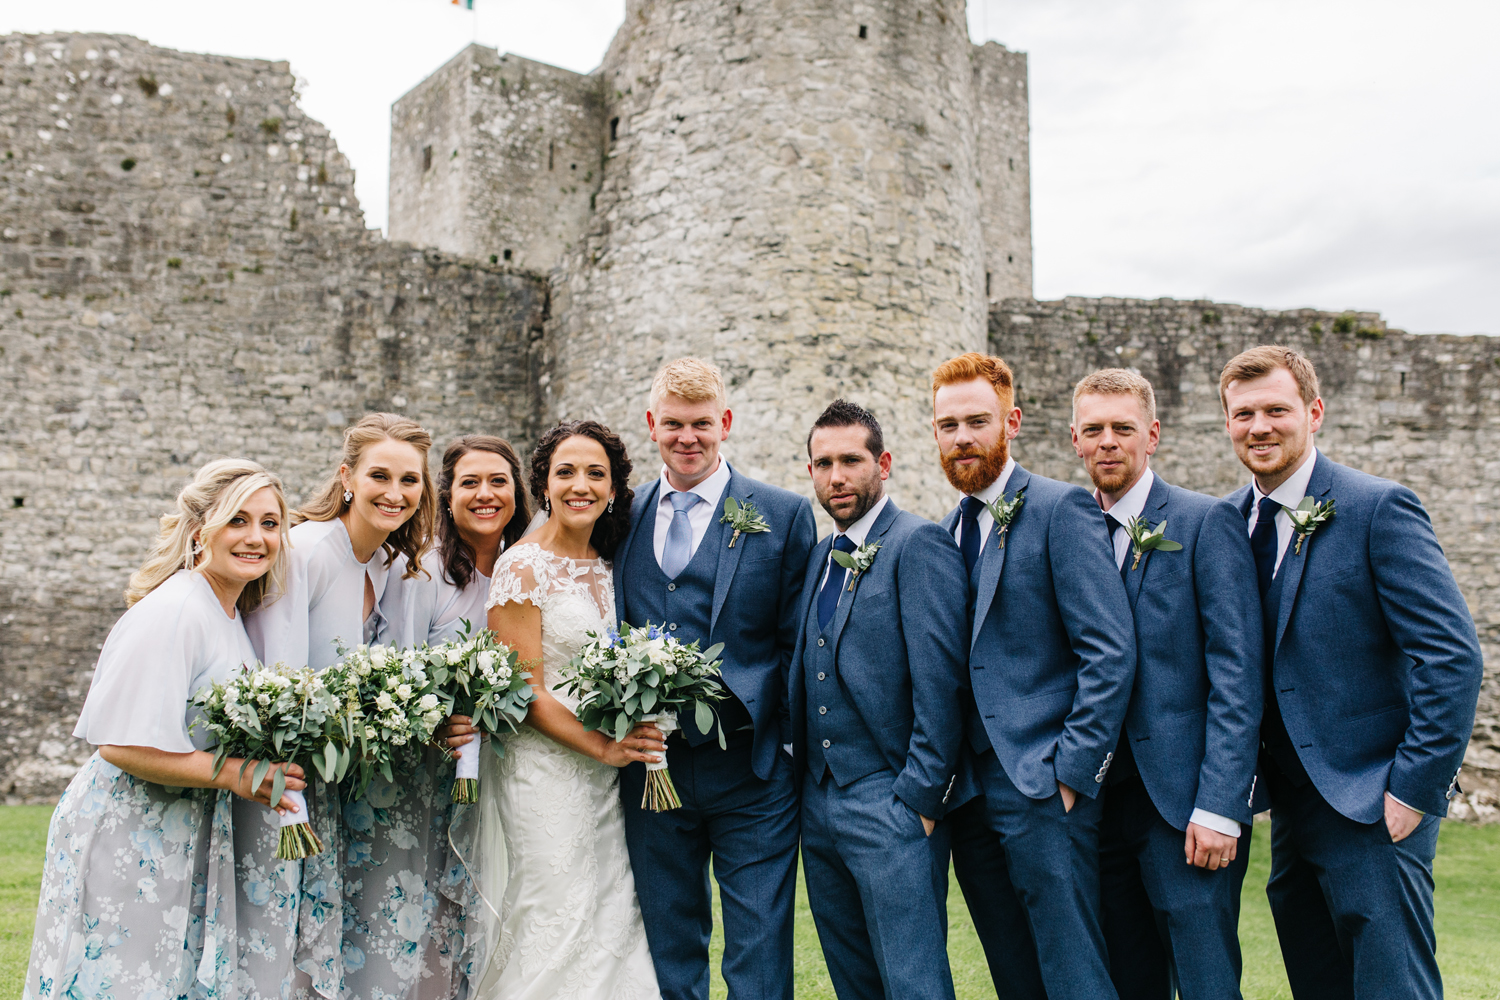 Nashville TN Wedding Photographer, Ireland Wedding Photographer, Destination Wedding Photographer, Ireland Elopement, Dublin Ireland, Ireland Wedding Photography